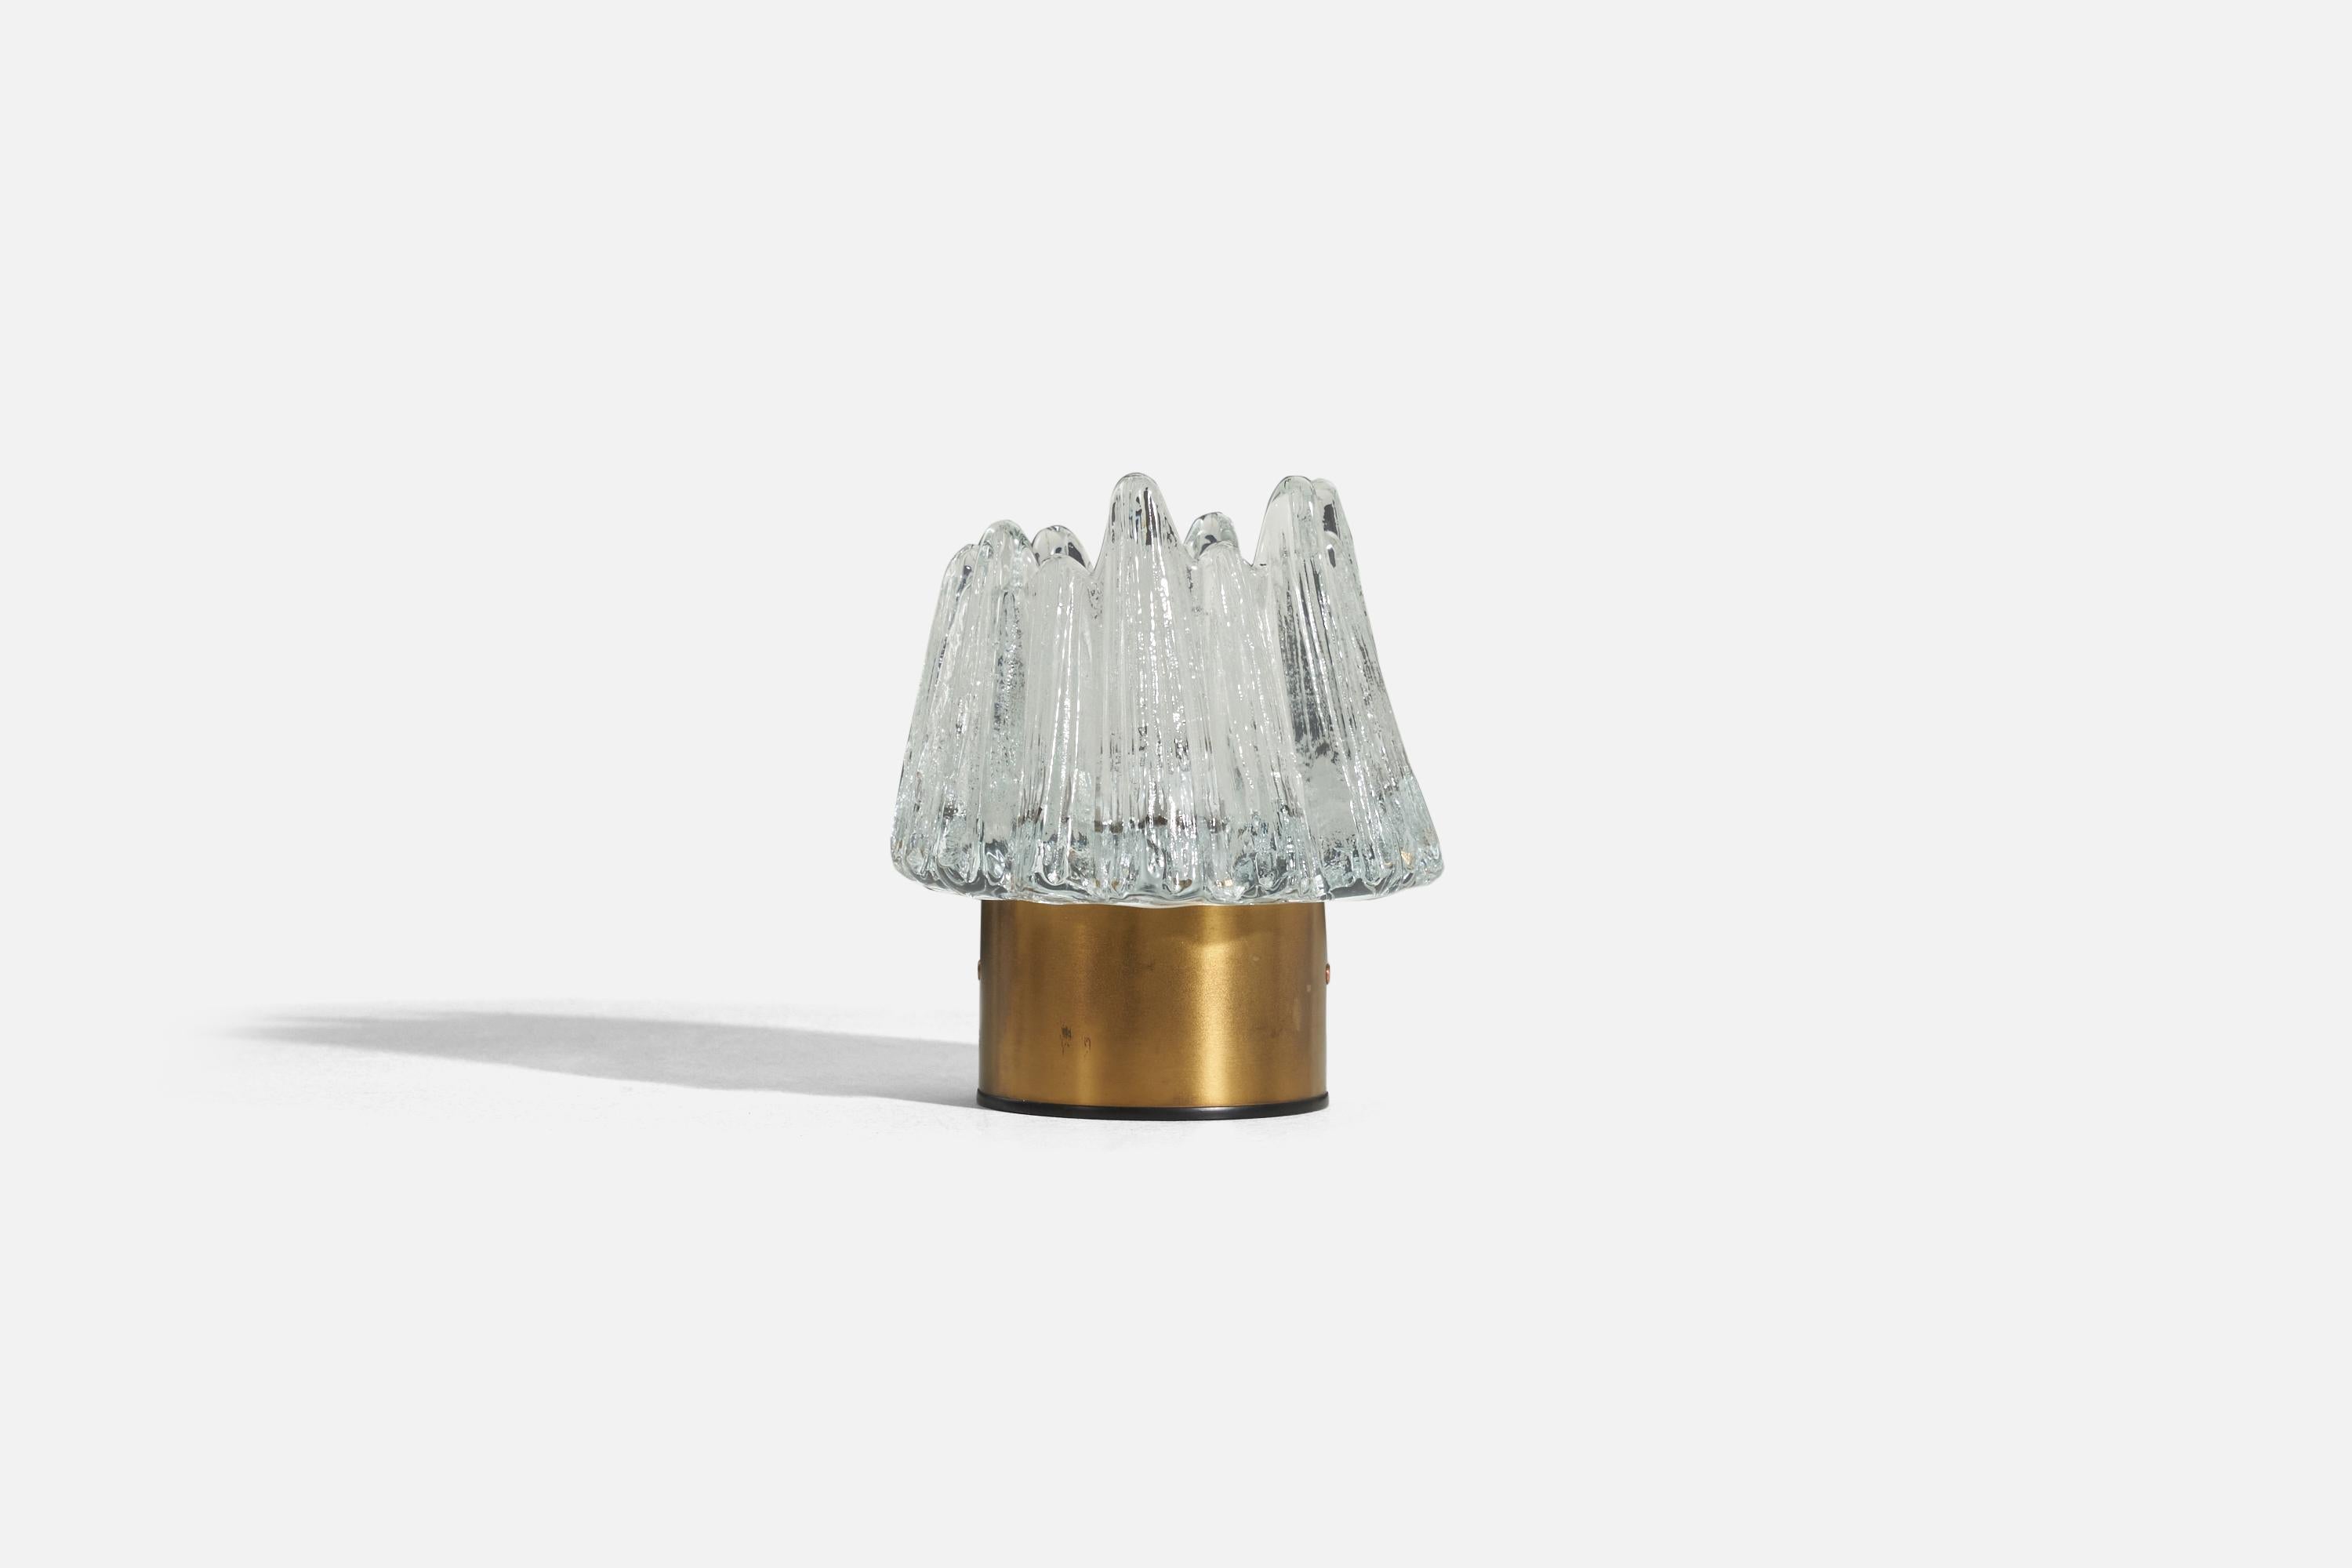 Tischlampe aus Messing und strukturiertem Glas, entworfen und hergestellt von NAFA, Schweden, ca. 1960er Jahre.

